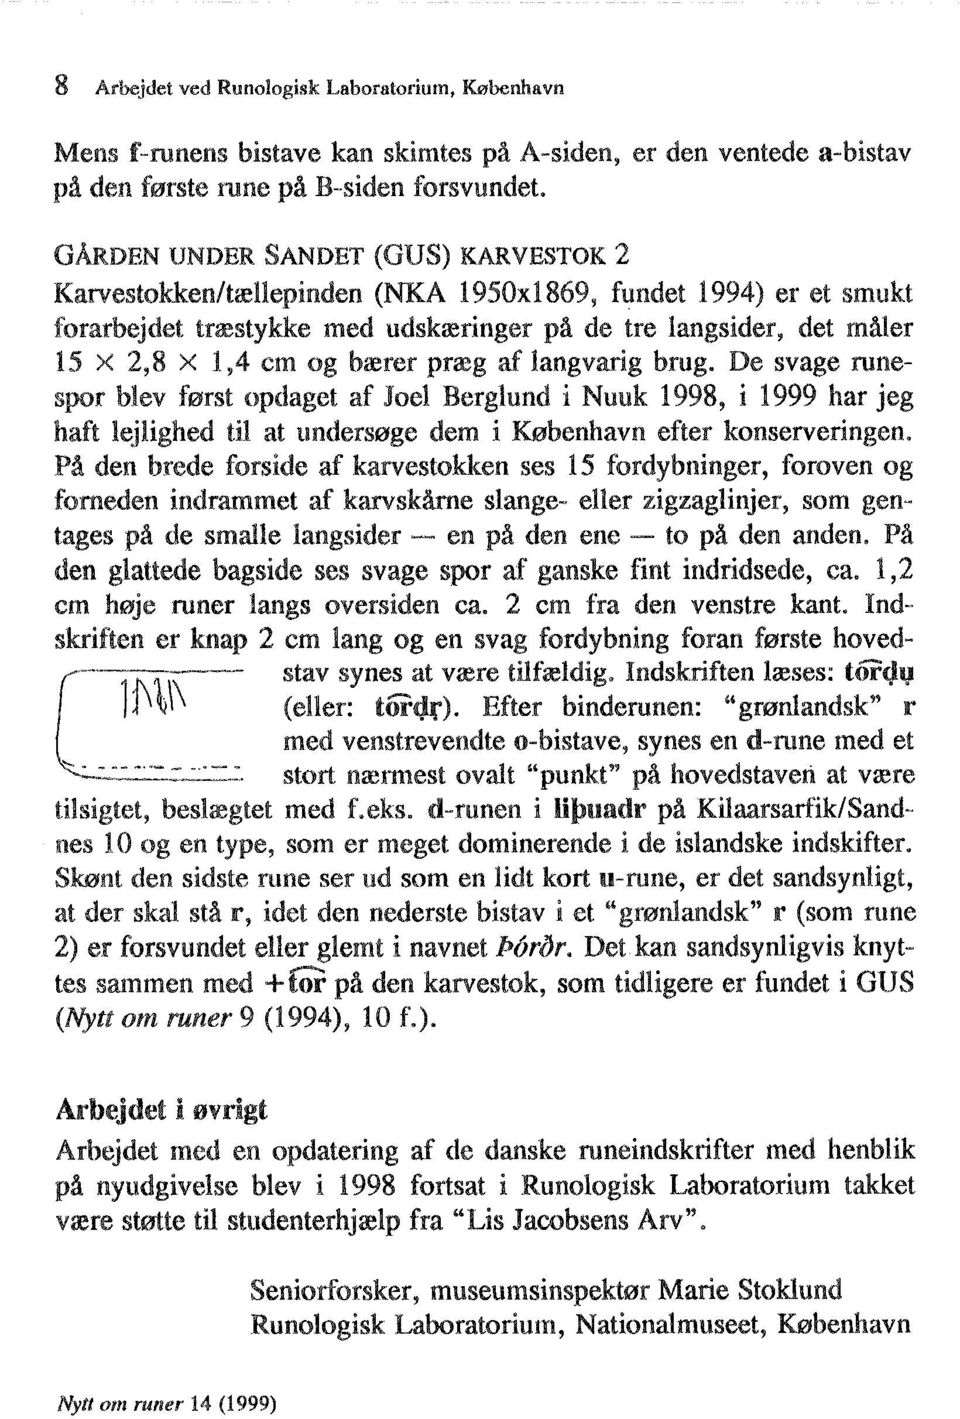 De svage runespor blev først opdaget af Joel Berglund i Nuuk 1998, i 1999 har jeg haft lejlighed til at undersøge dem i København efter konserveringen.